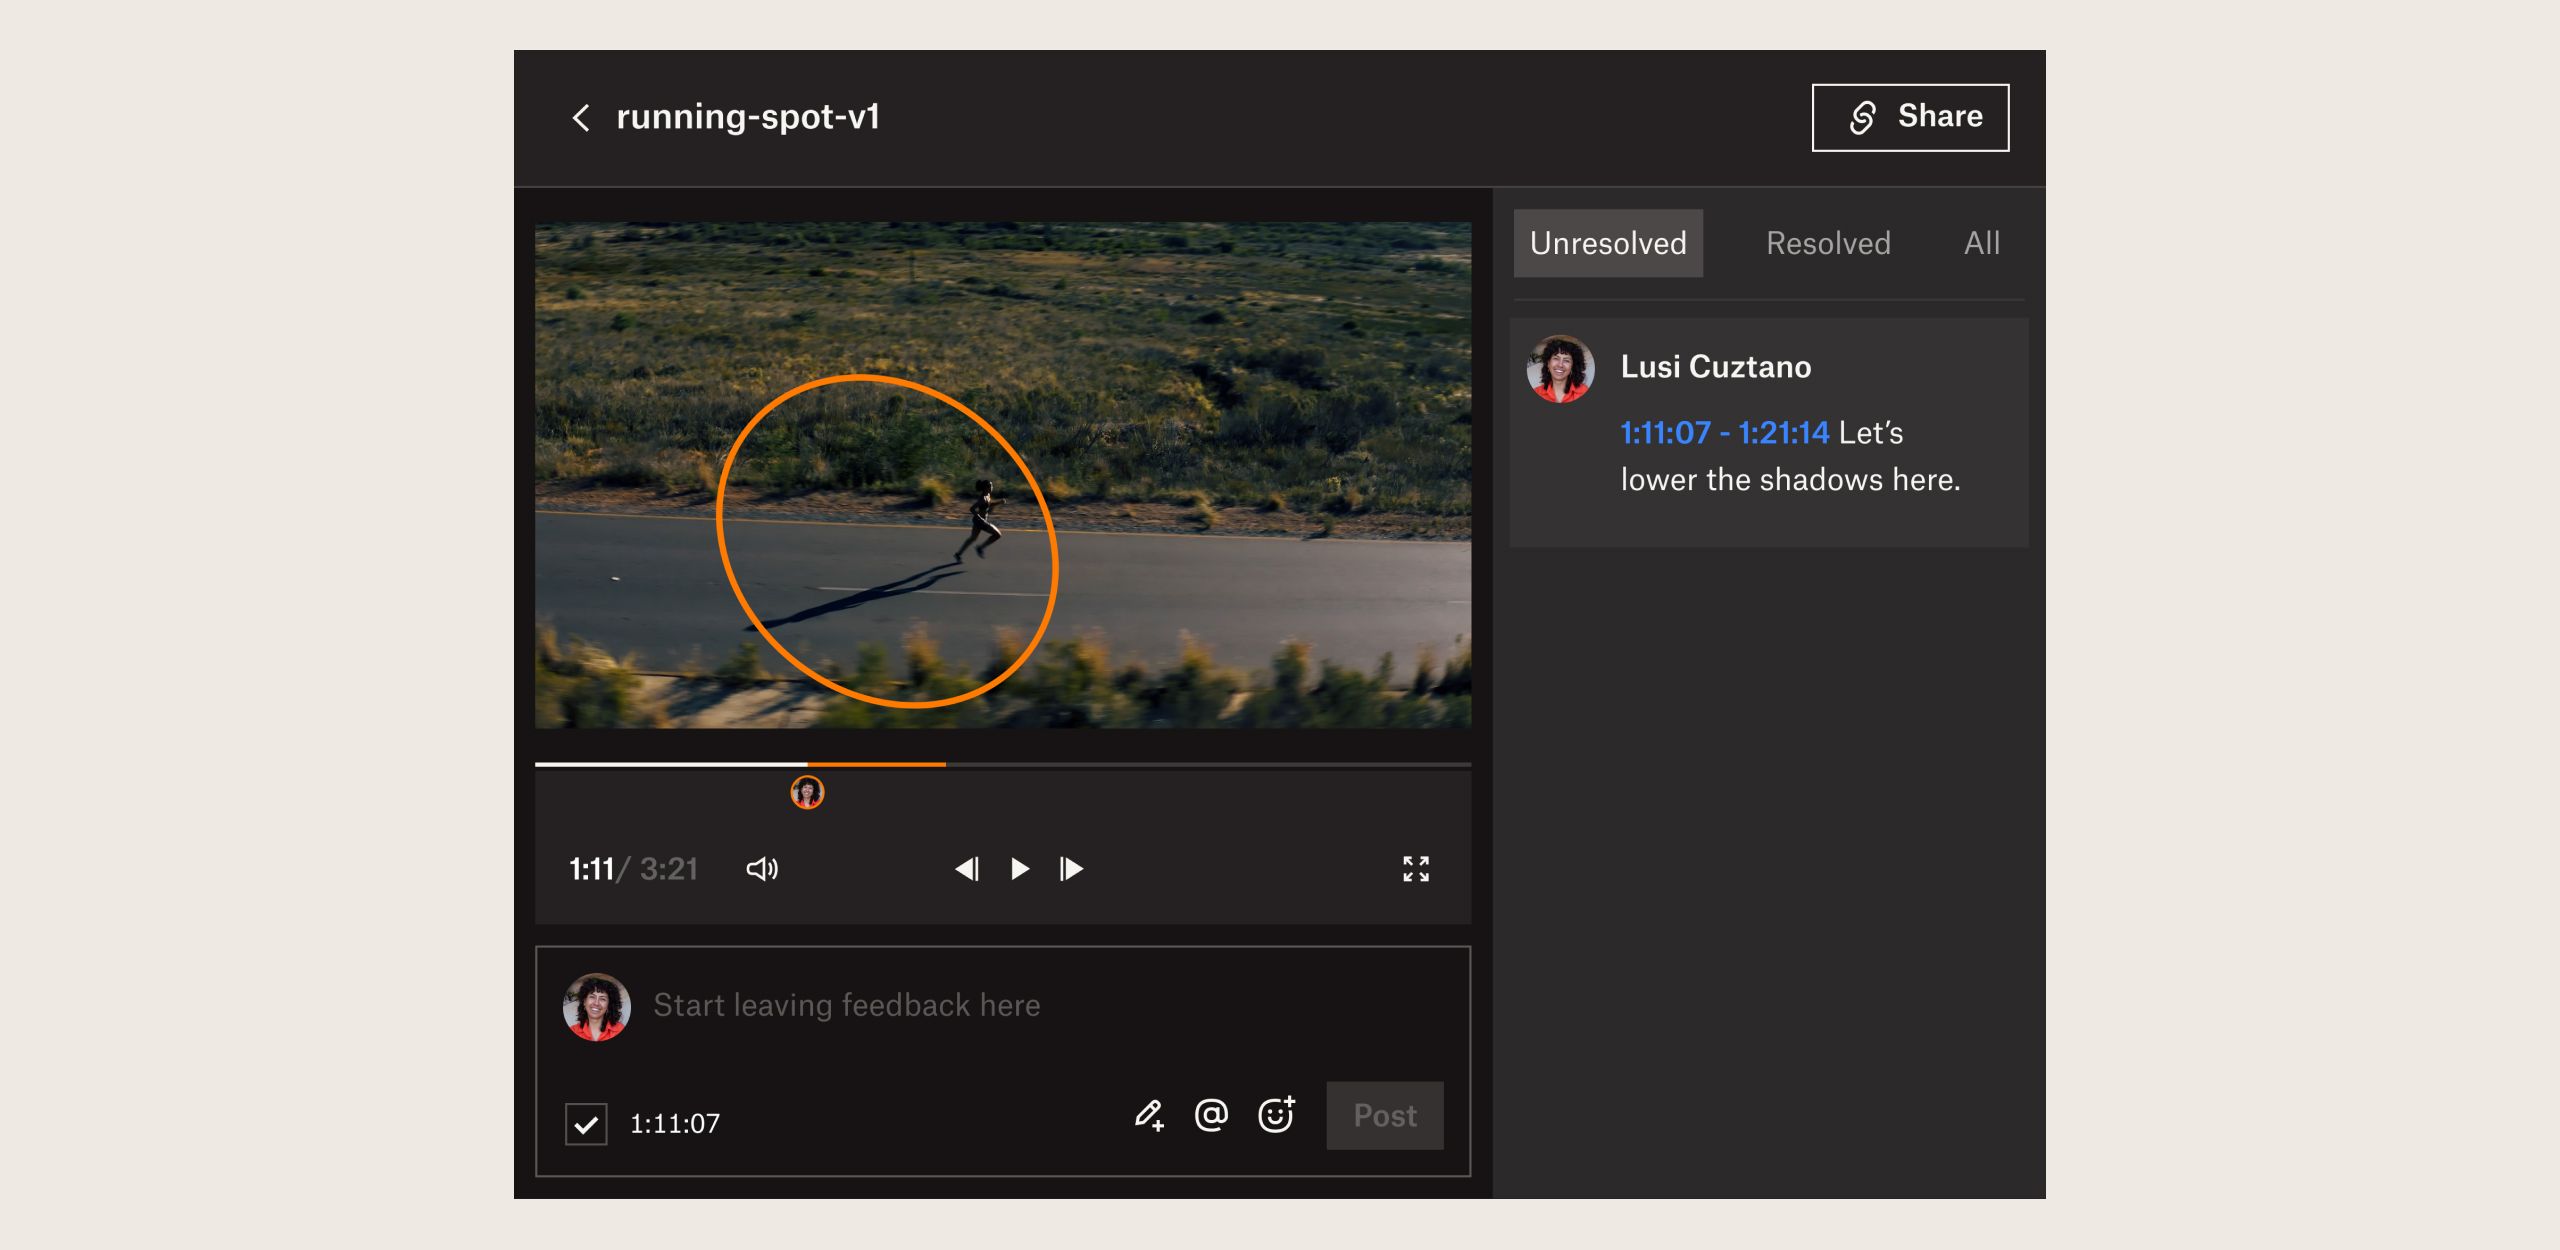 Interfaz de usuario del producto en la que se muestra cómo revisar y aprobar un vídeo con Dropbox Replay.